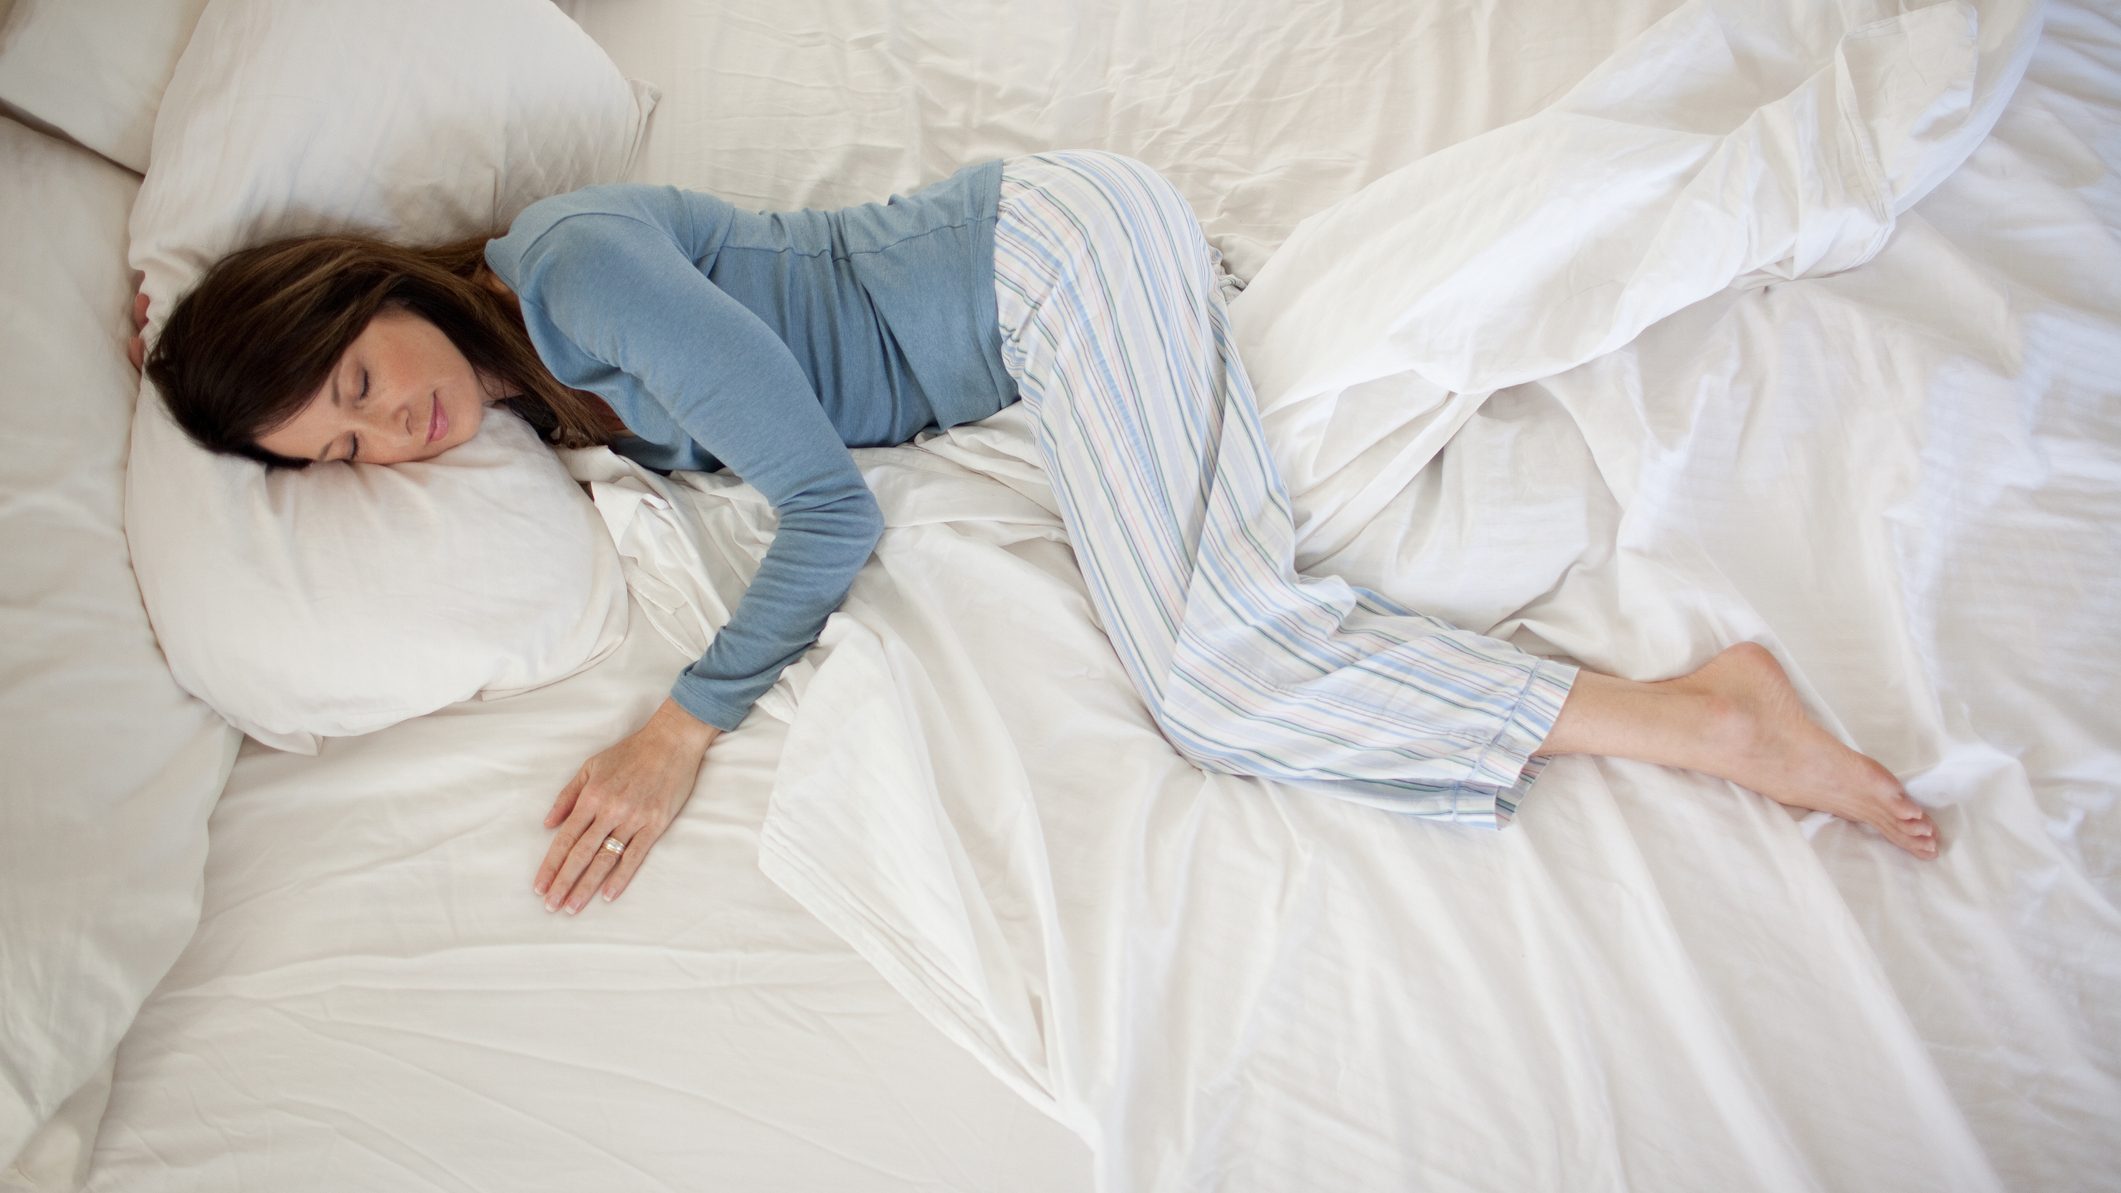 Beneficios de dormir con una almohada entre las piernas - Cadena Dial